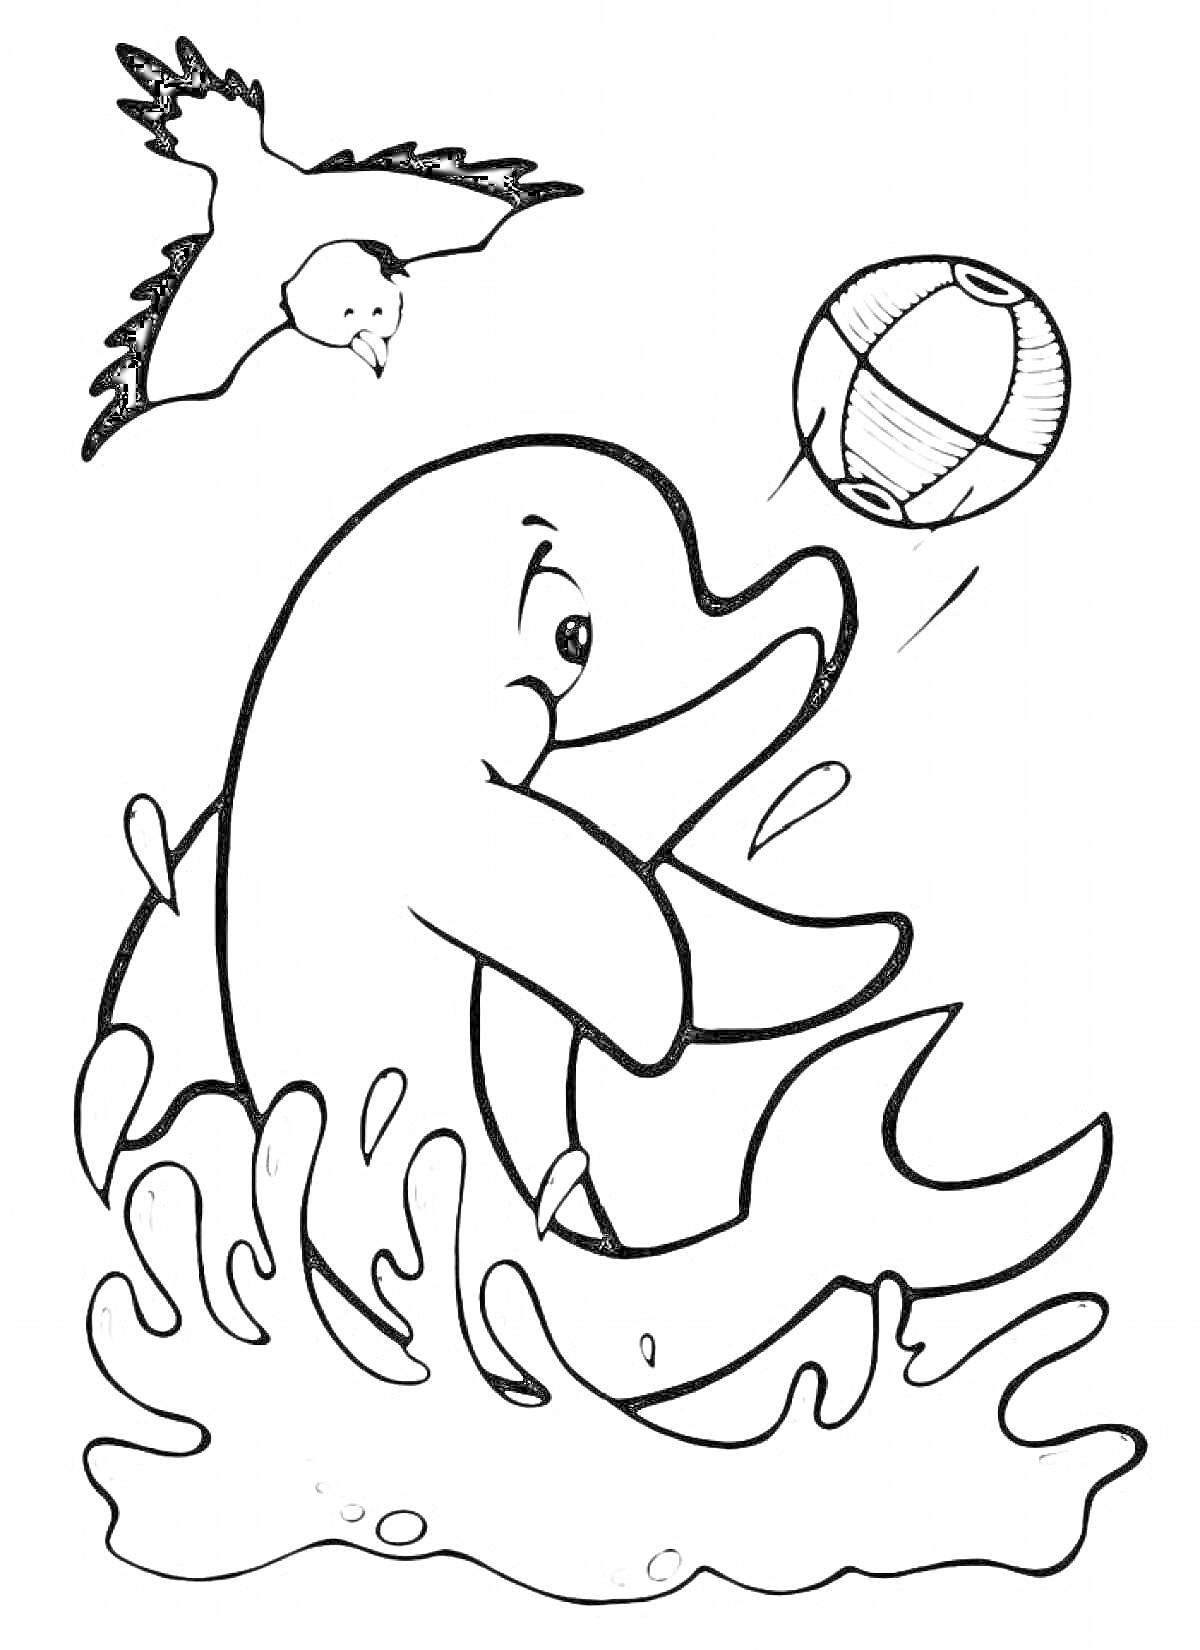 Раскраска Дельфин прыгает из воды, мяч, чайка летит над водой